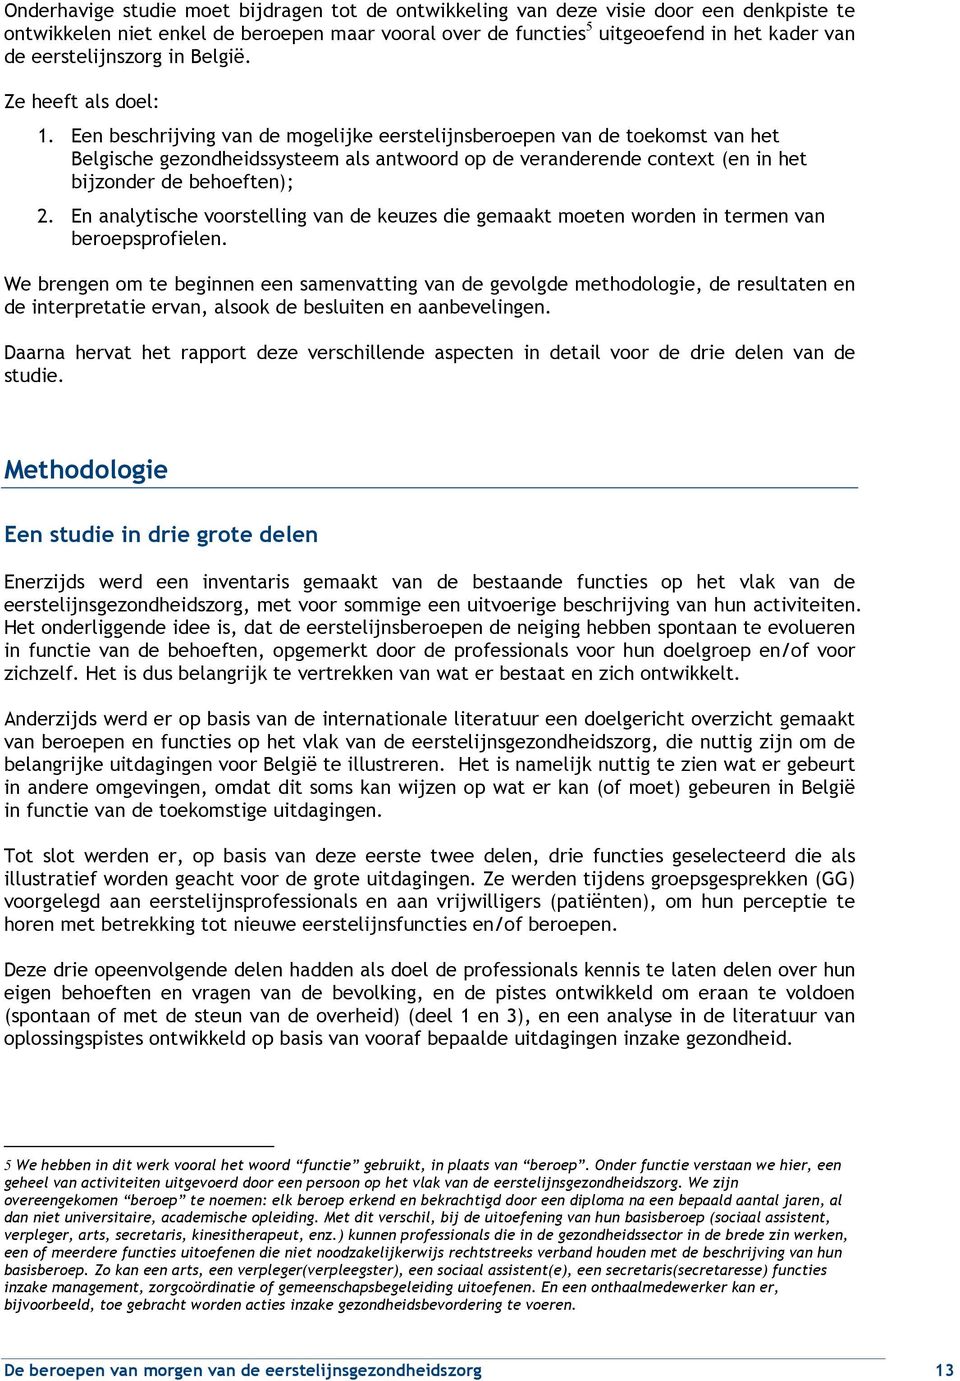 Een beschrijving van de mogelijke eerstelijnsberoepen van de toekomst van het Belgische gezondheidssysteem als antwoord op de veranderende context (en in het bijzonder de behoeften); 2.